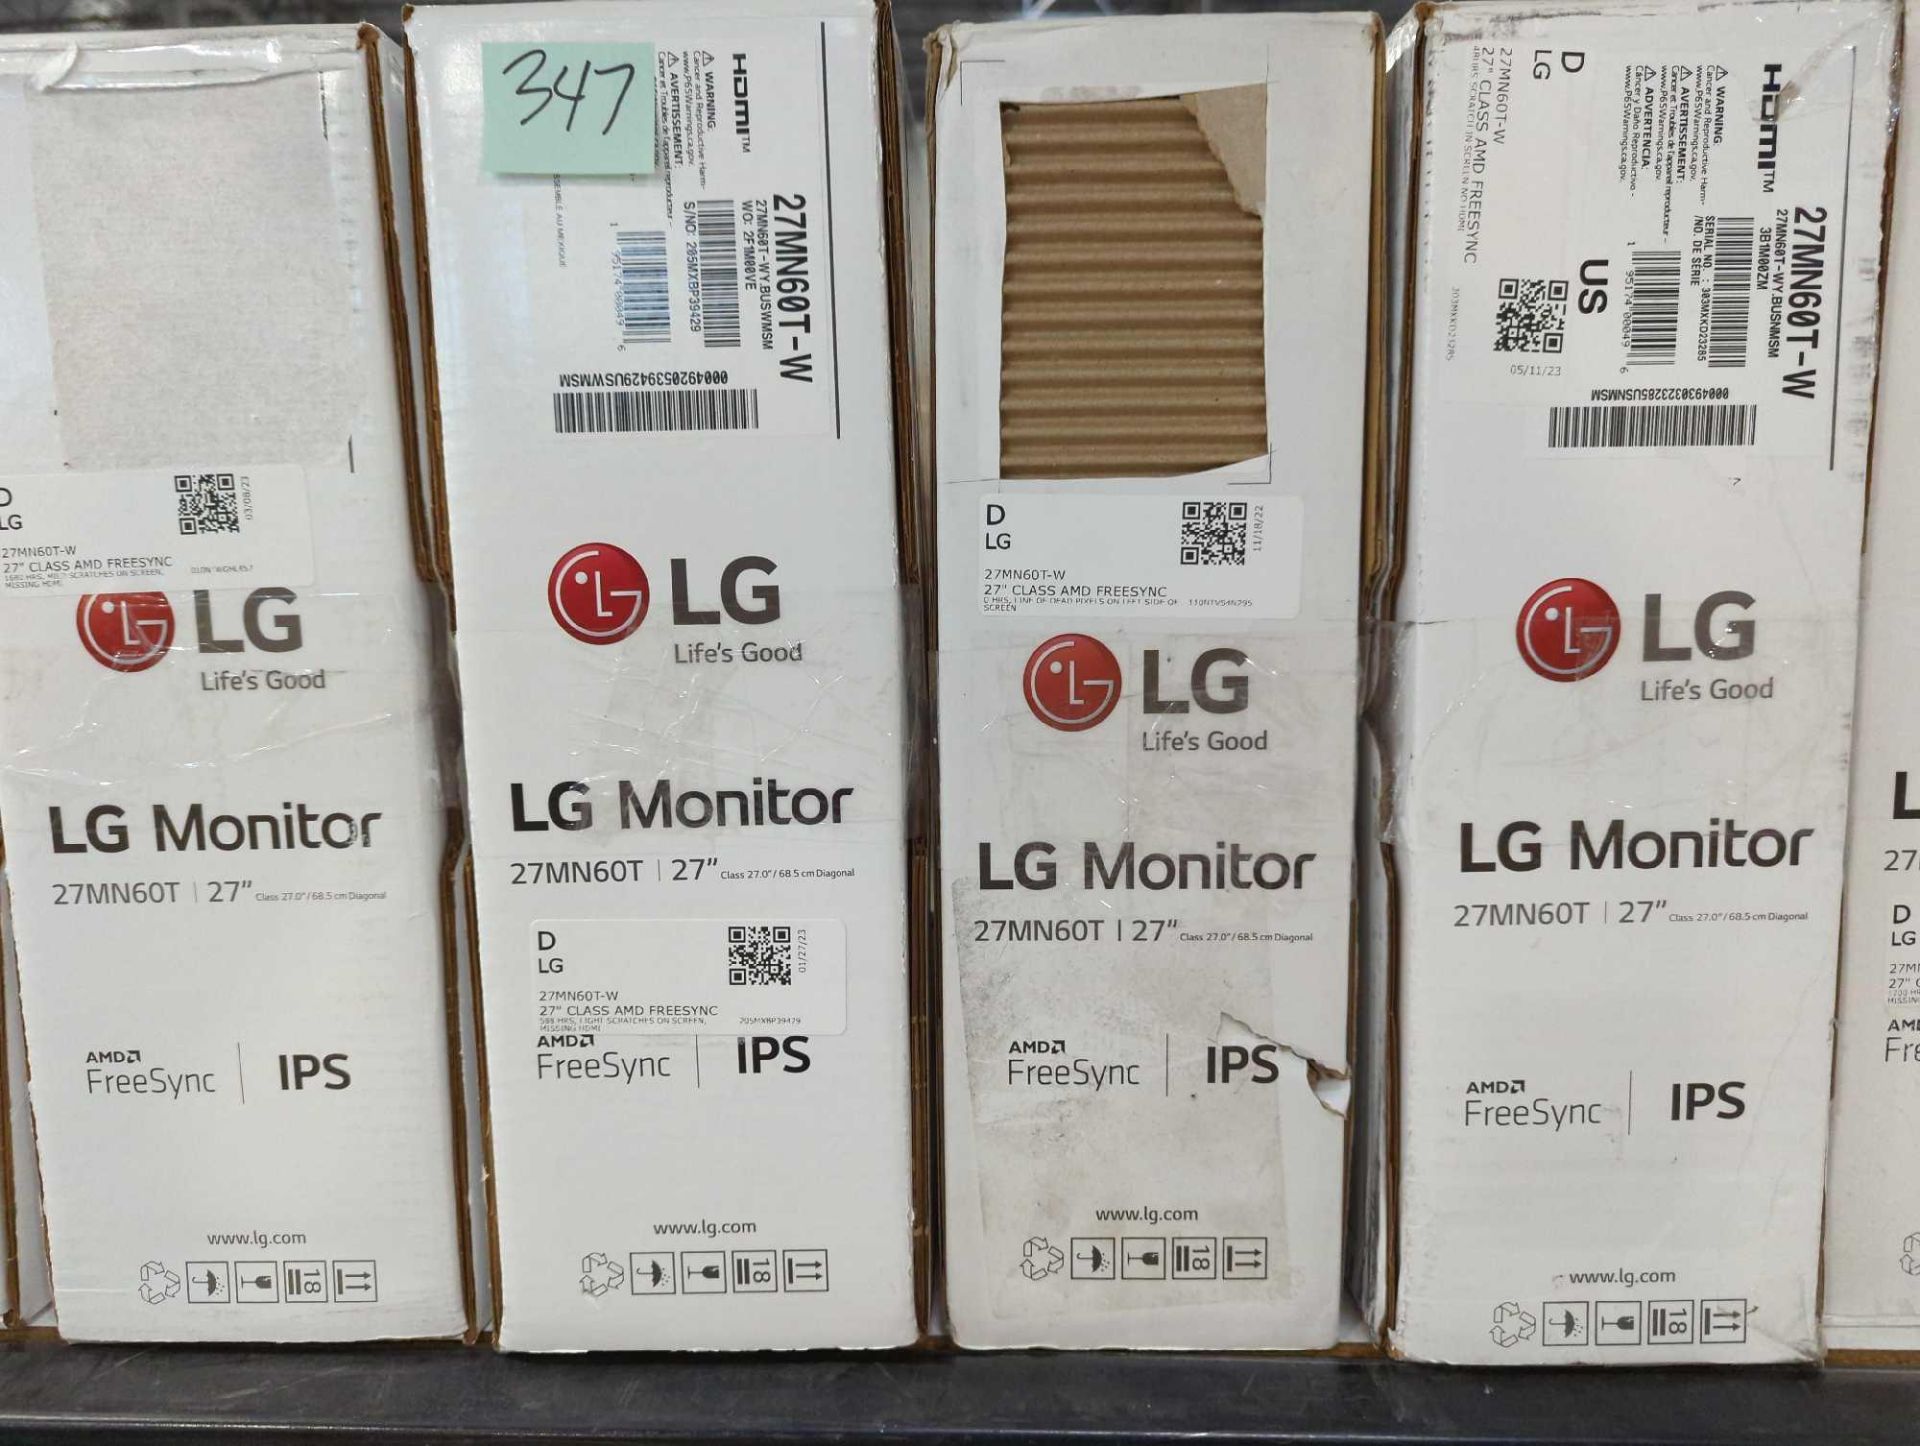 LG Monitors - Image 3 of 4